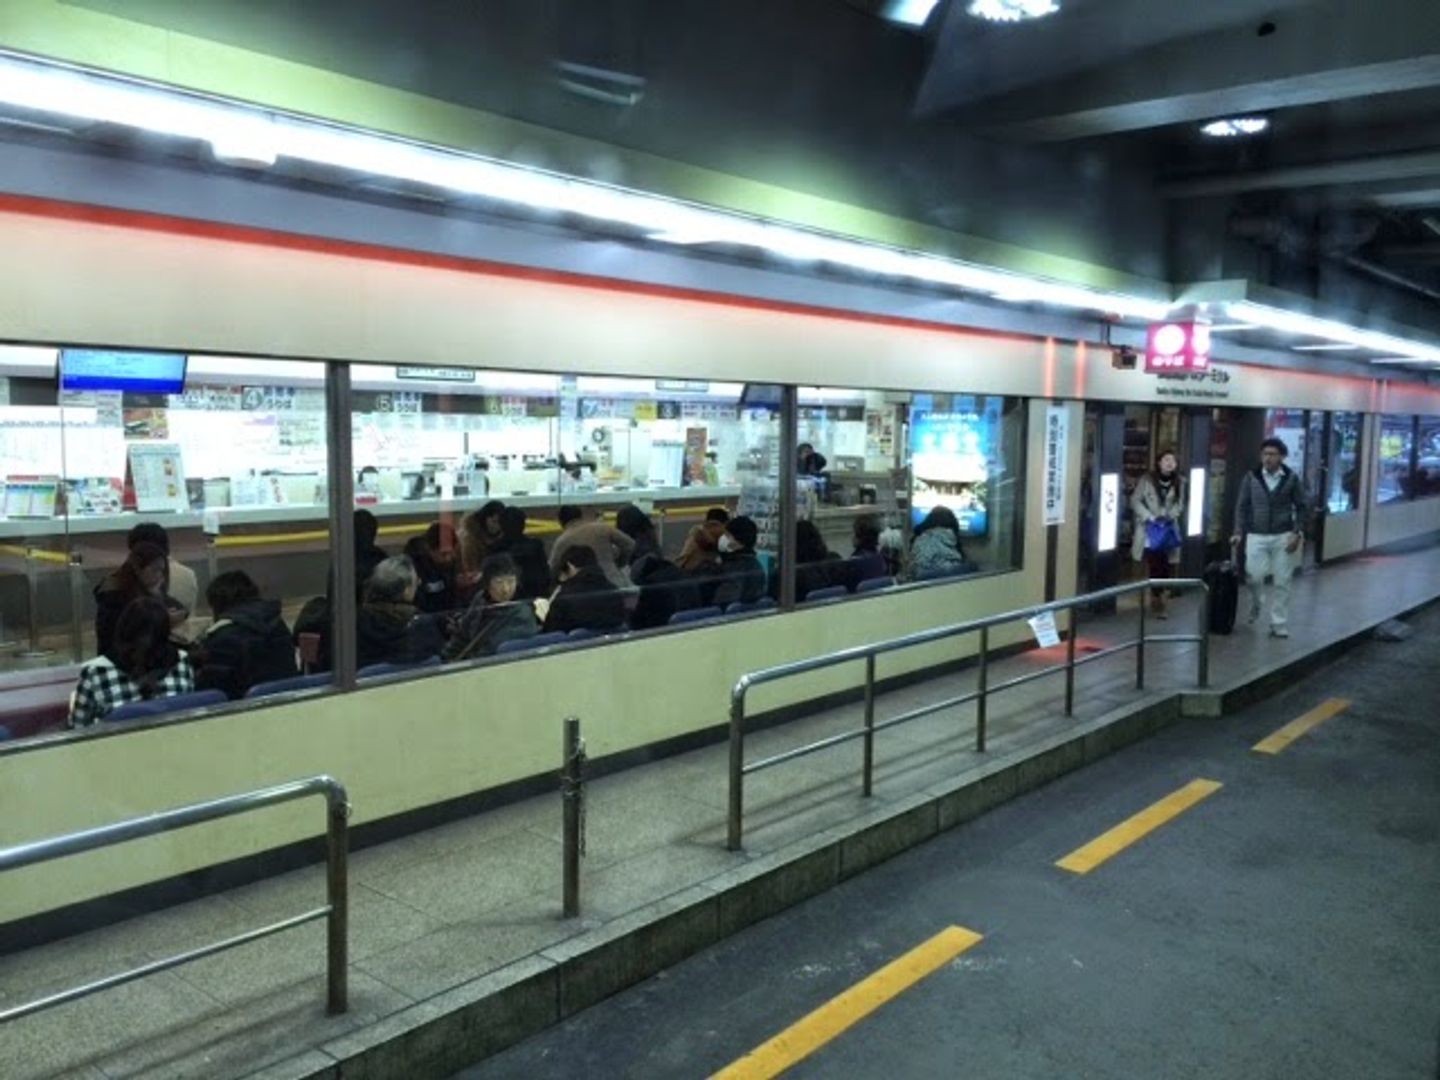 [大阪-->有馬溫泉 最便捷交通] 阪急高速巴士搭乘體驗 (附訂票教學) | 日本 | 關西 | 旅行酒吧